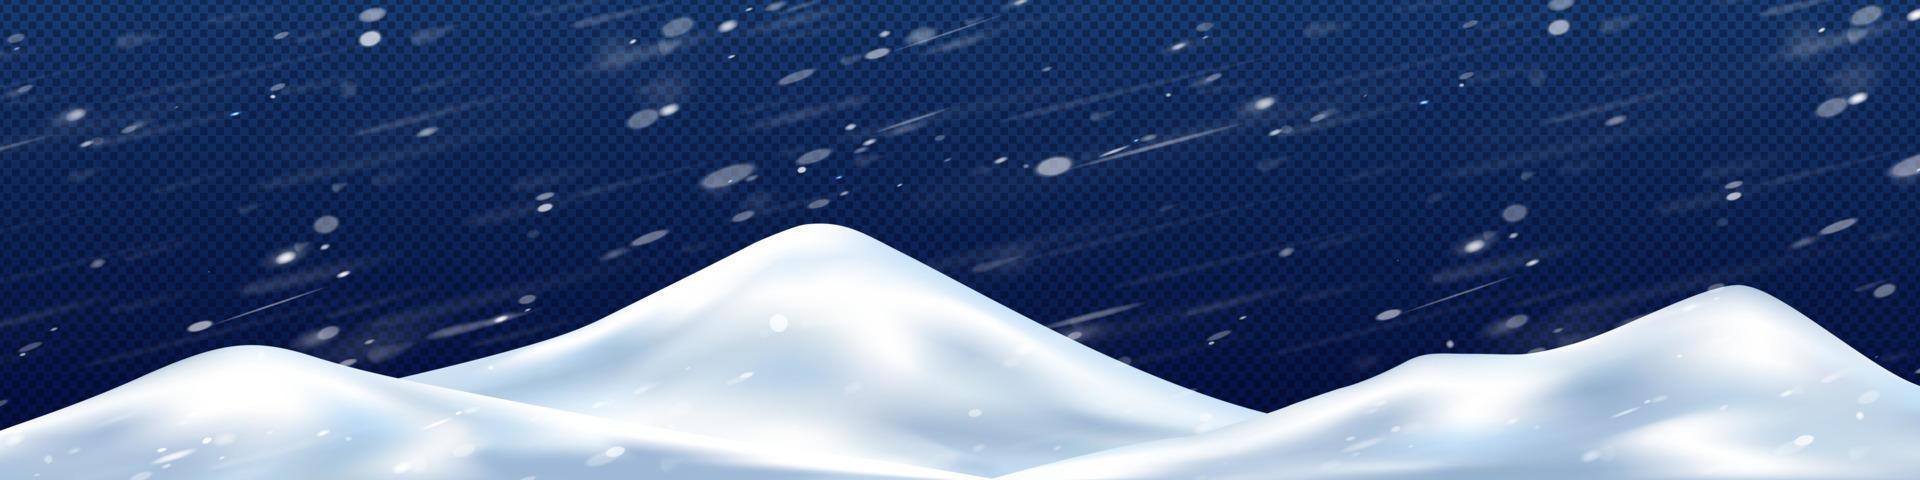 Schneehaufen im Wintersturm png, 3D-Darstellung vektor